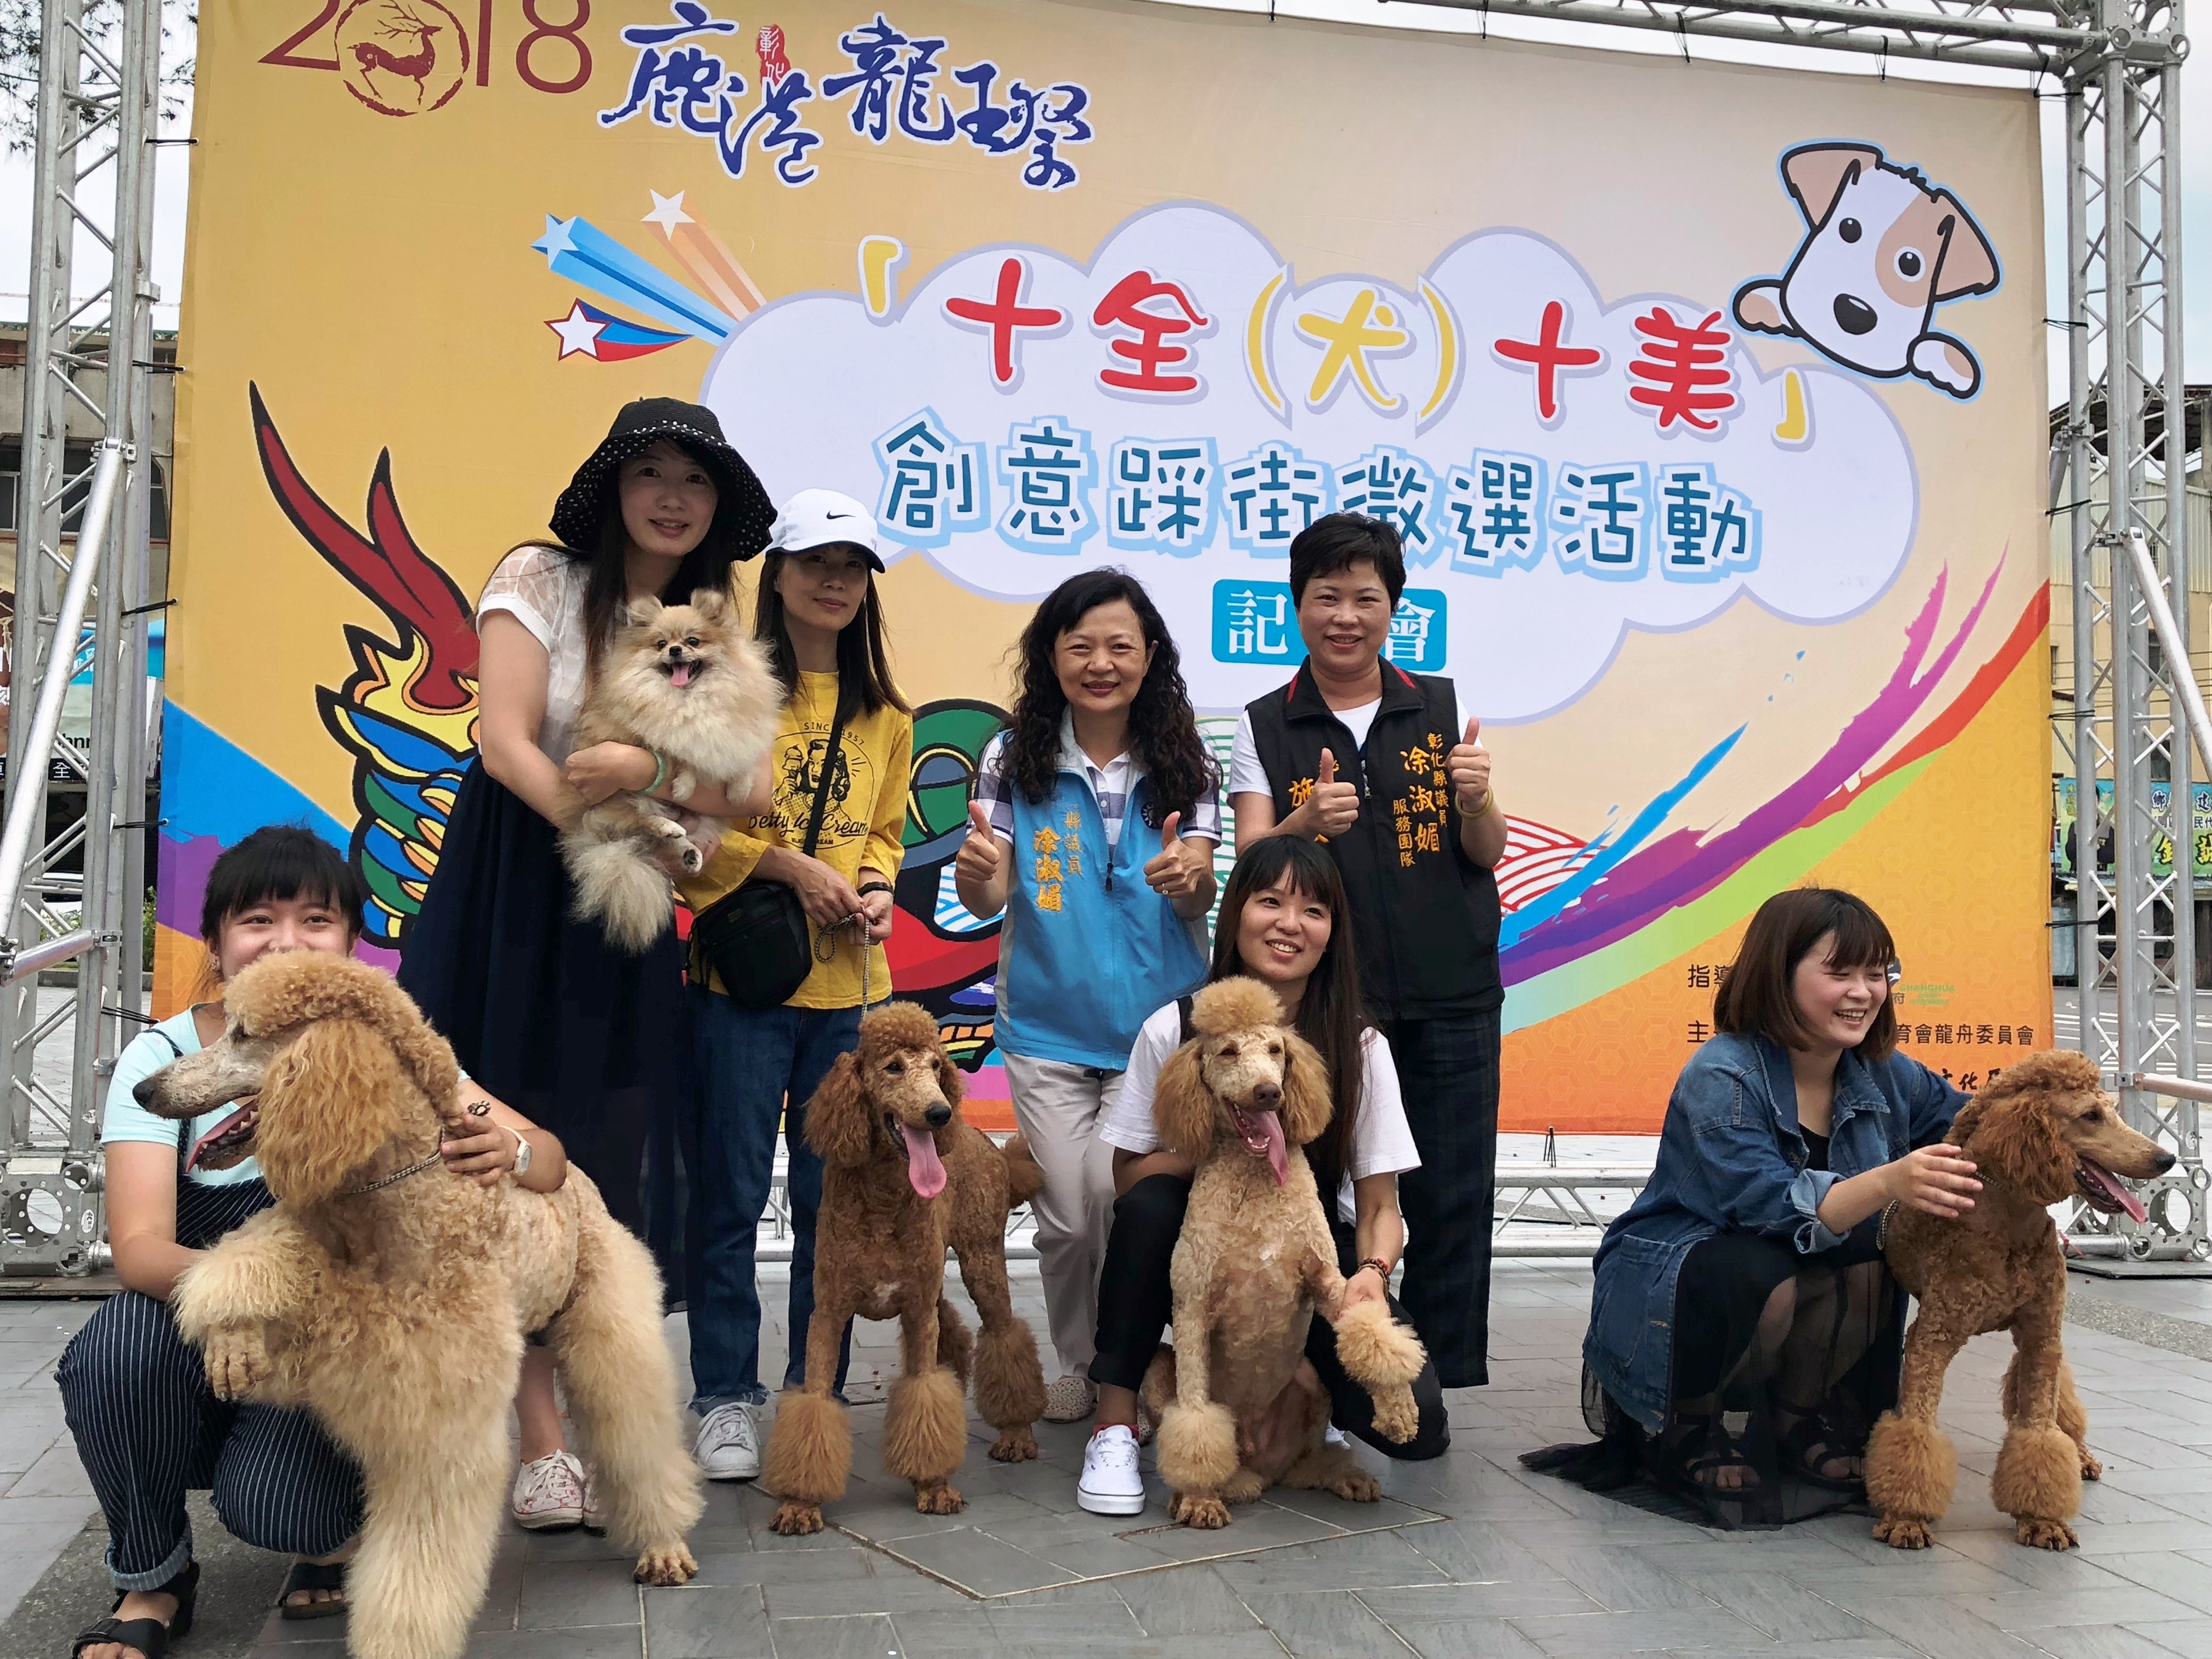 2018鹿港慶端陽系列活動首部曲-龍王祭「十全(犬)十美」踩街徵選活動開跑